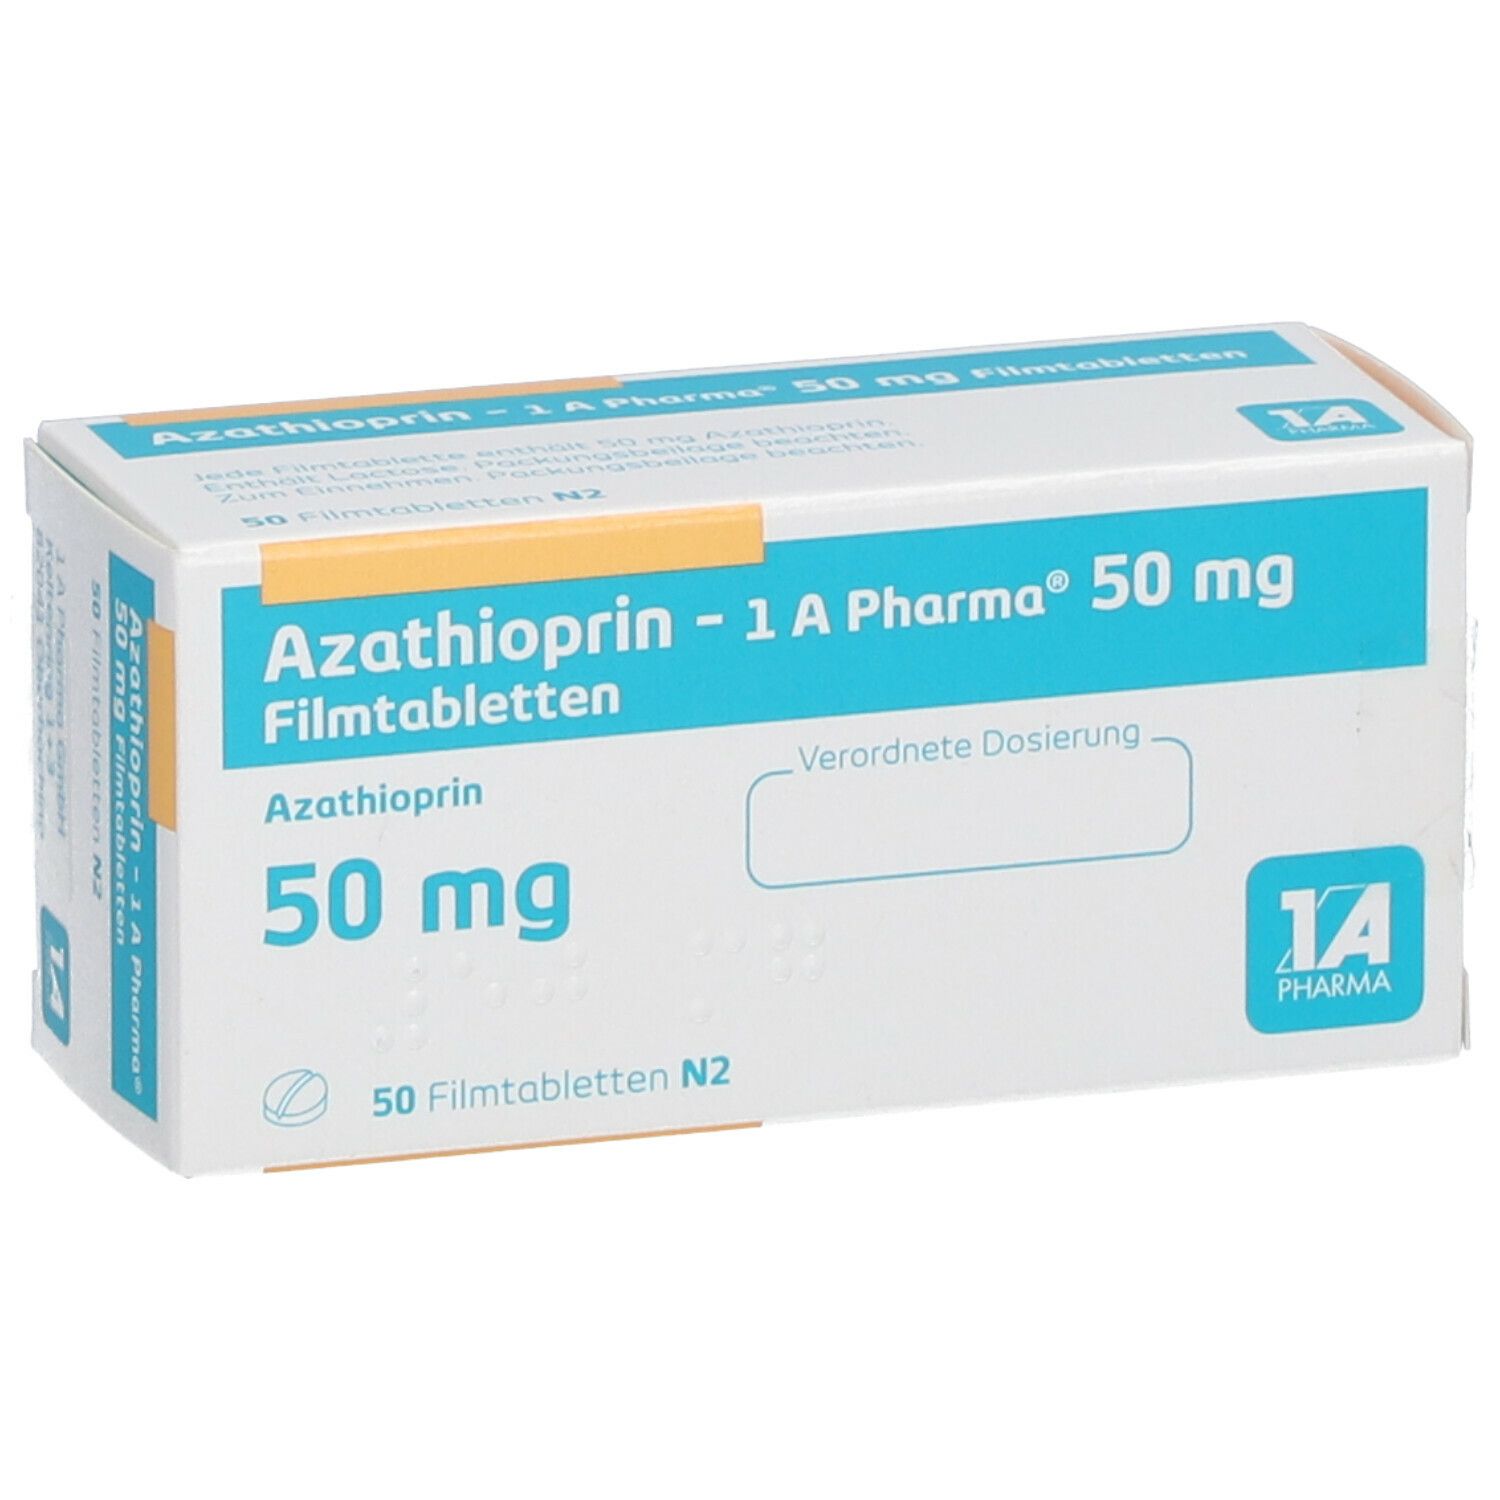 Azathioprin 1A Pharma® 50 mg